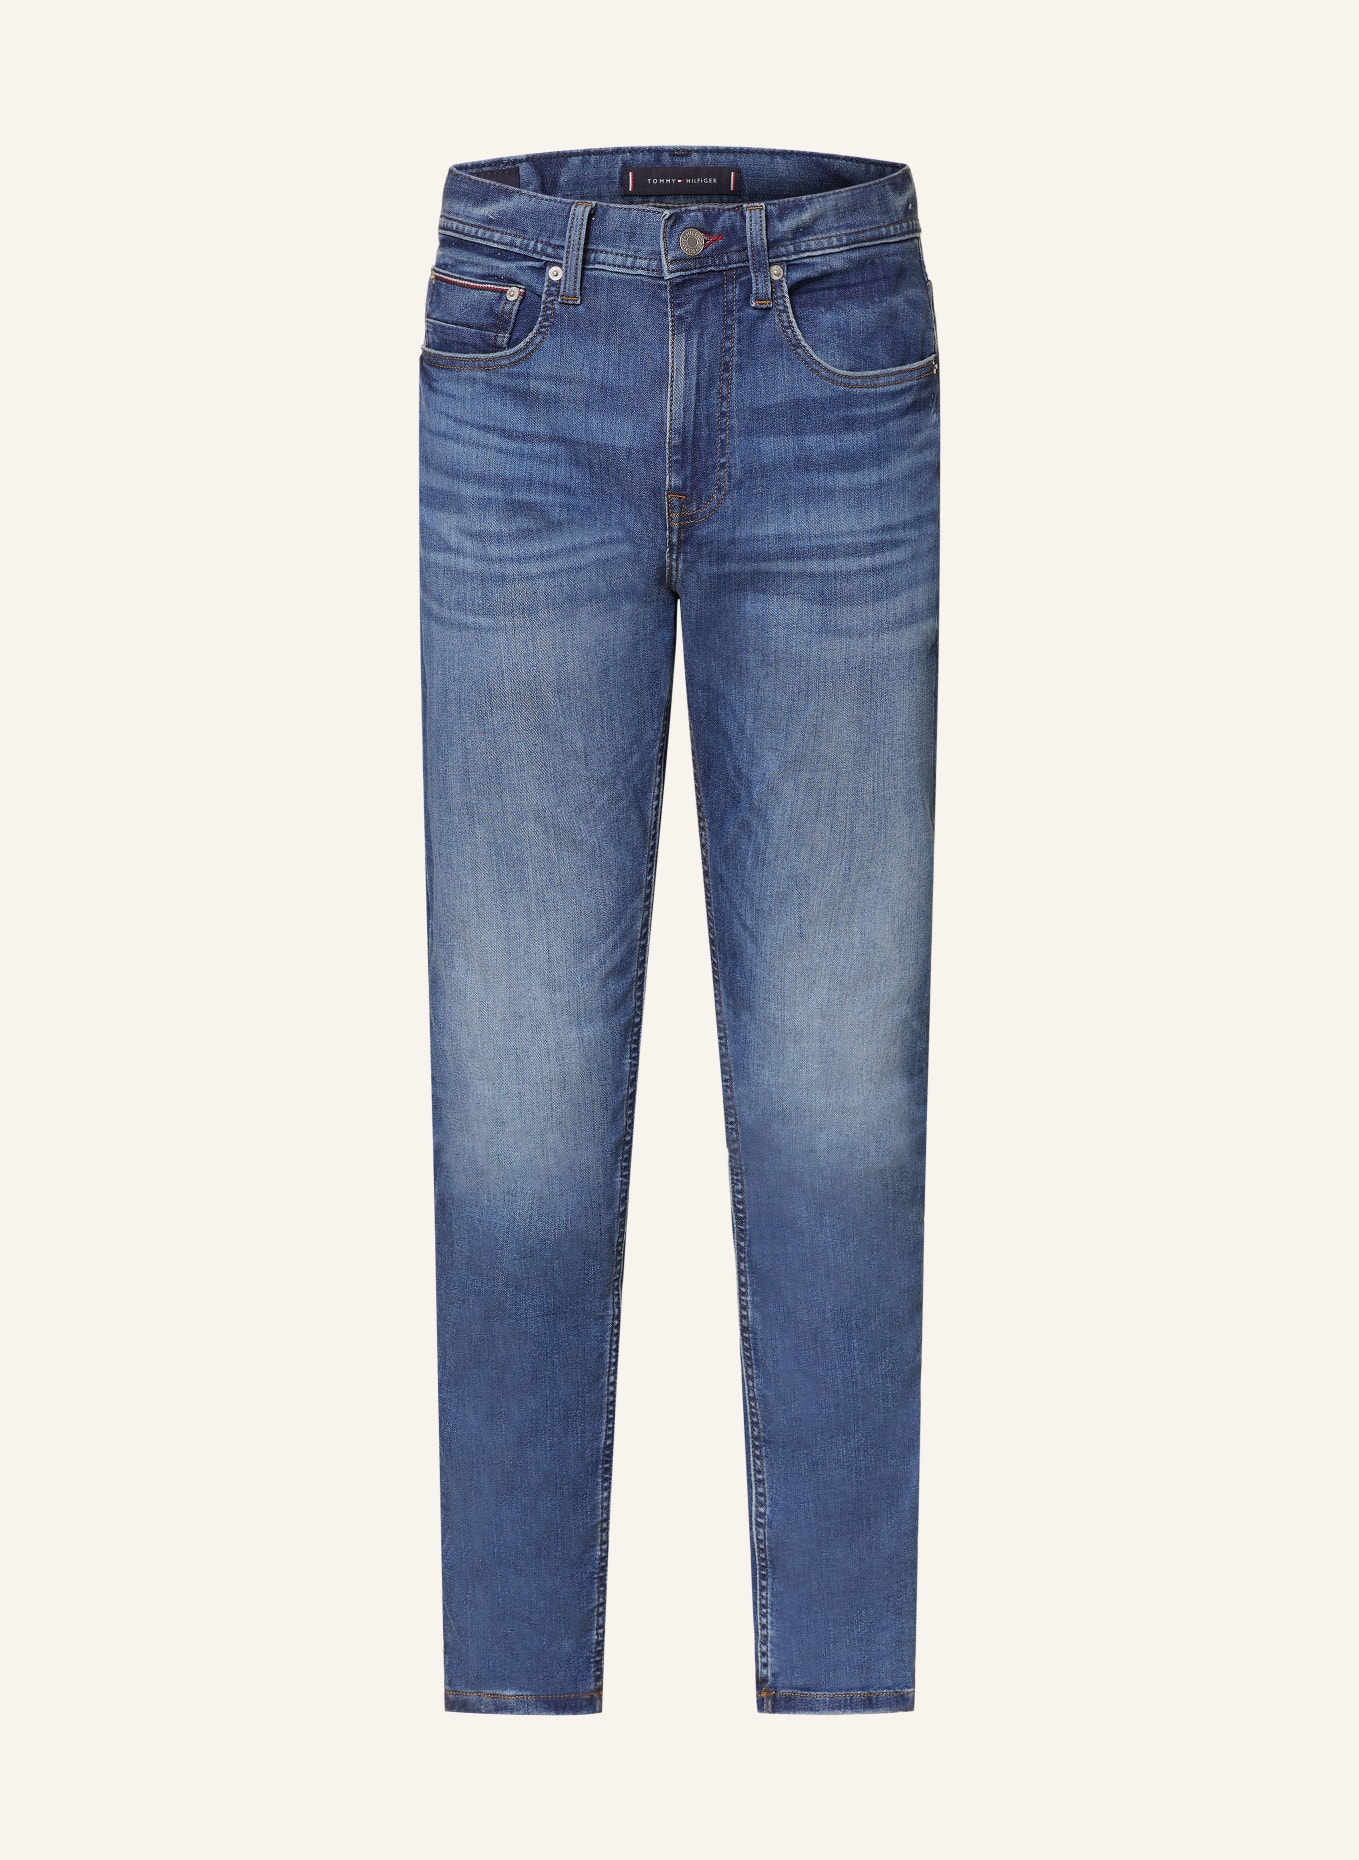 TOMMY HILFIGER Jeans HOUSTON Slim Taper Fit, Farbe: 1BQ Tumon (Bild 1)